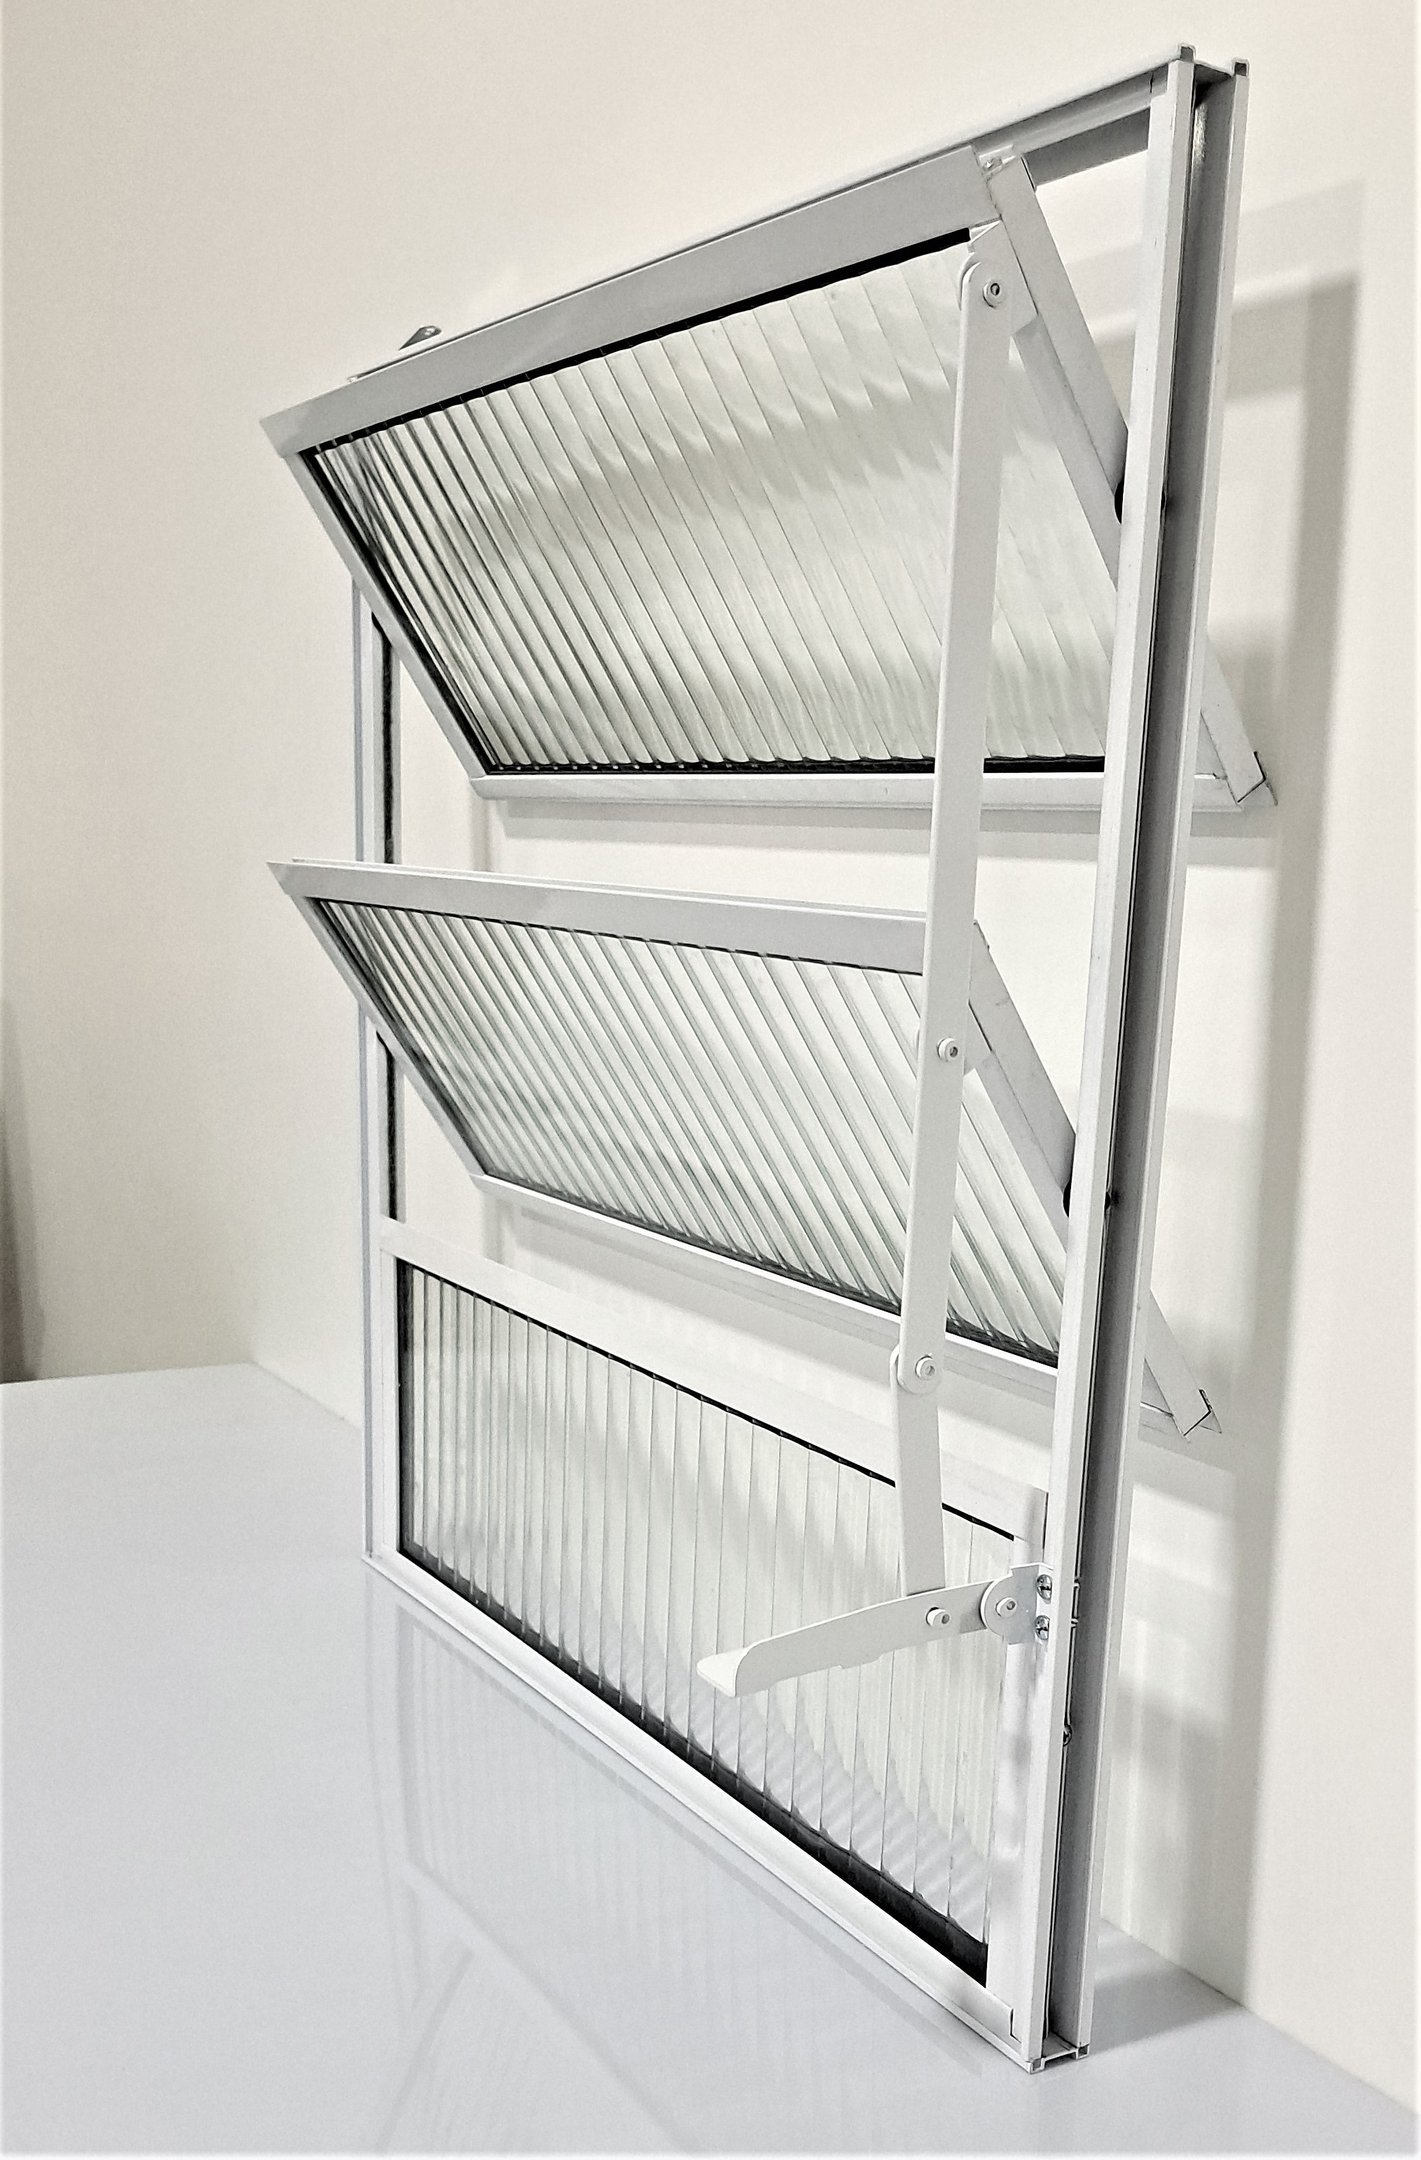 Vitrô Basculante de Alumínio com Vidro Canelado 1 Seção 60x60cm Branco - 6